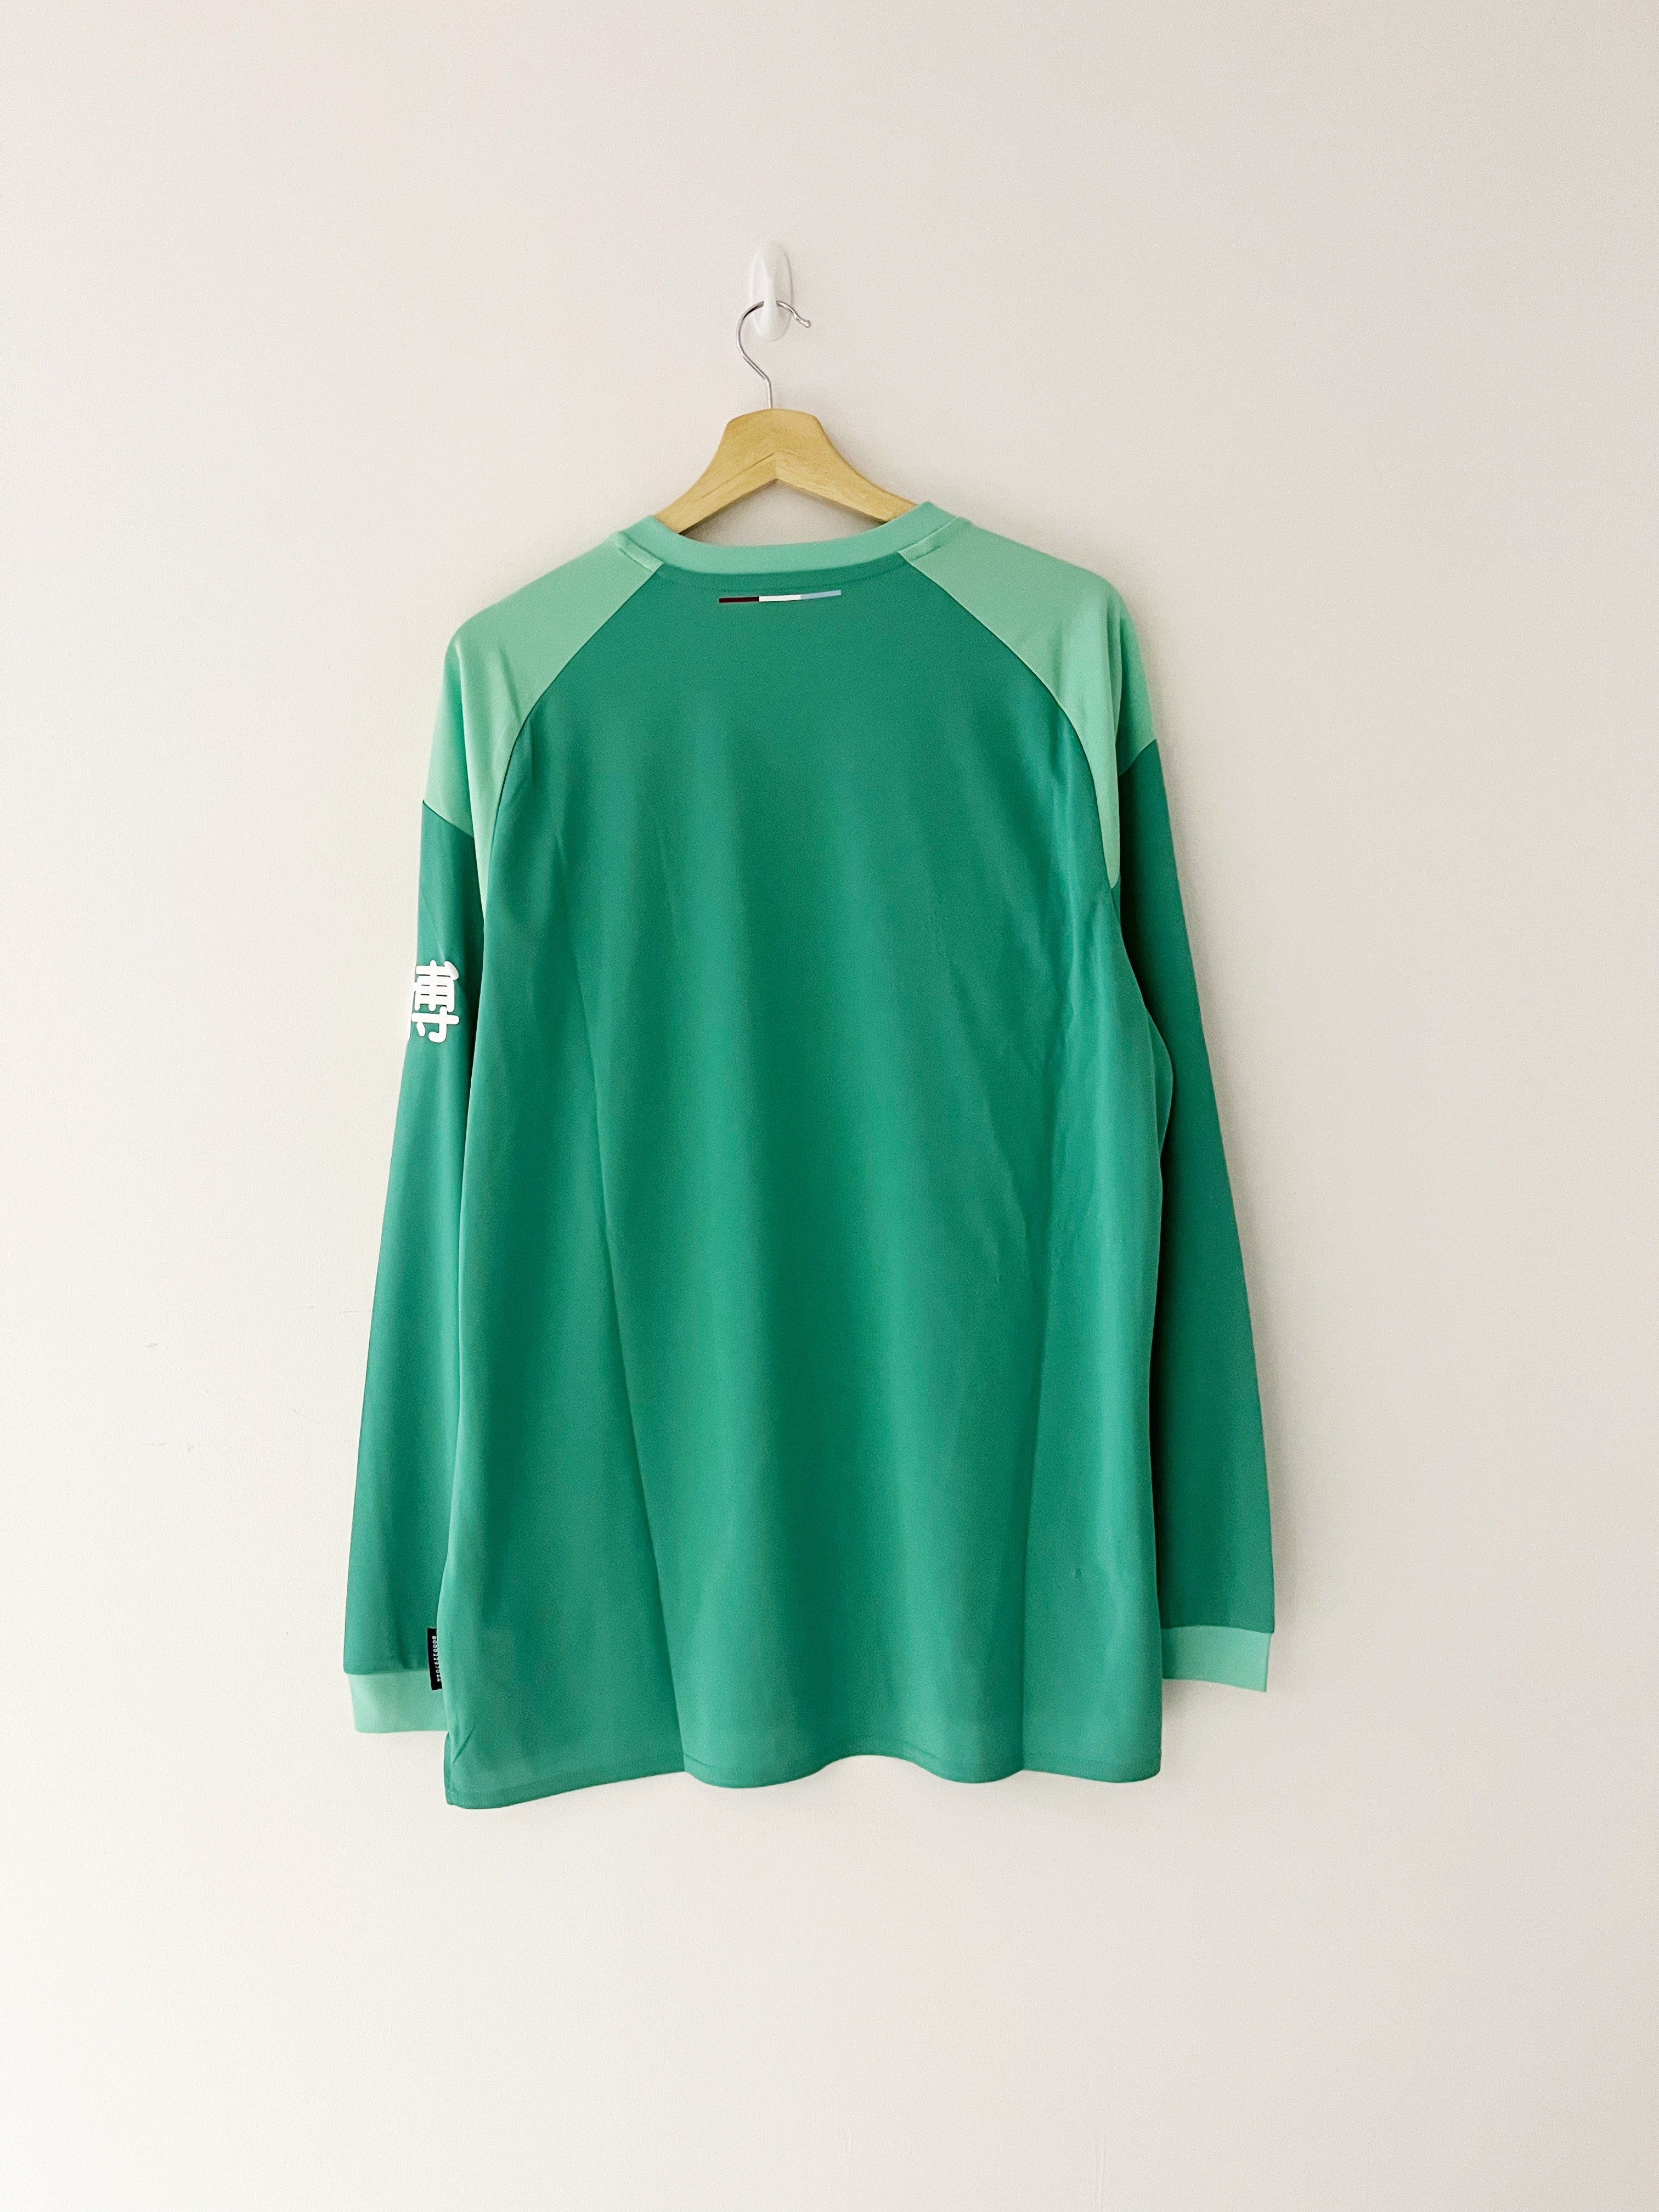 2019/20 Burnley GK Shirt (XL) 7.5/10